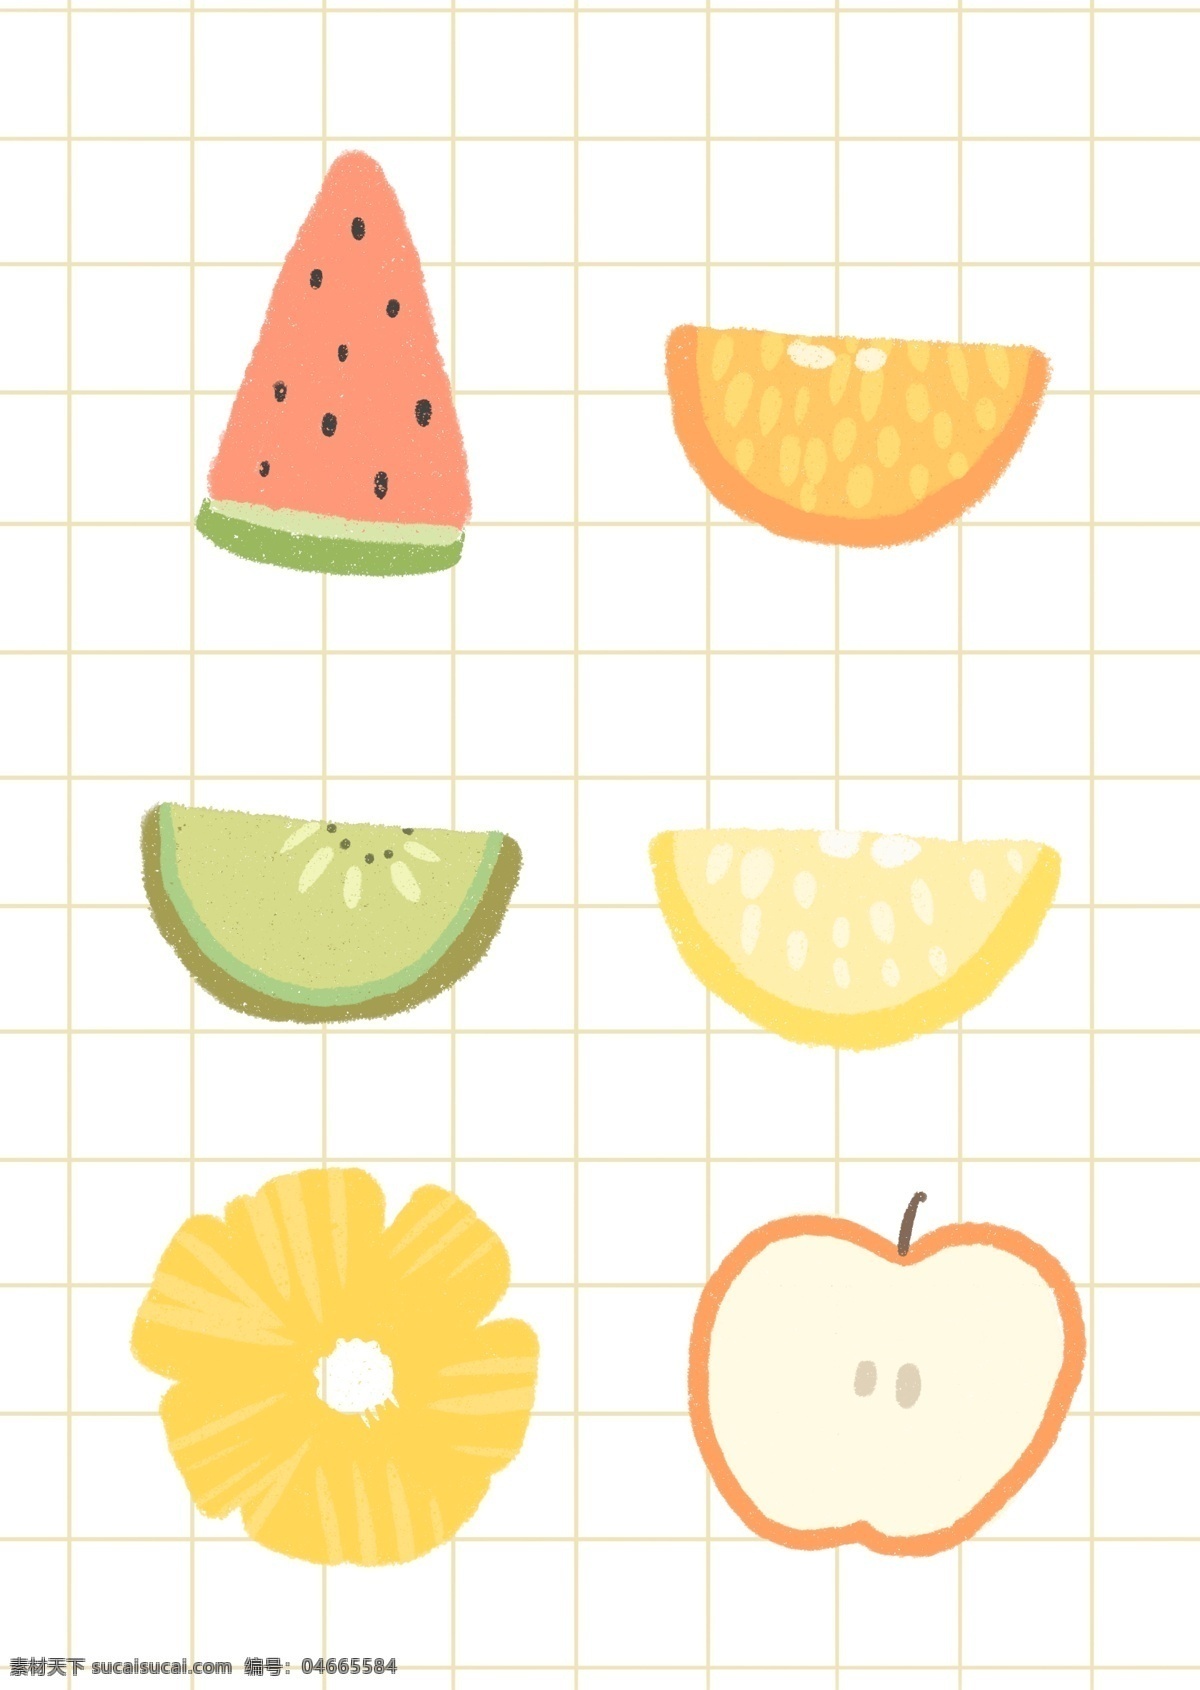 插画水果素材 插画 手绘 矢量 西瓜 苹果句子 橙子 牛油果 猕猴桃 柠檬 芒果 水果 分层